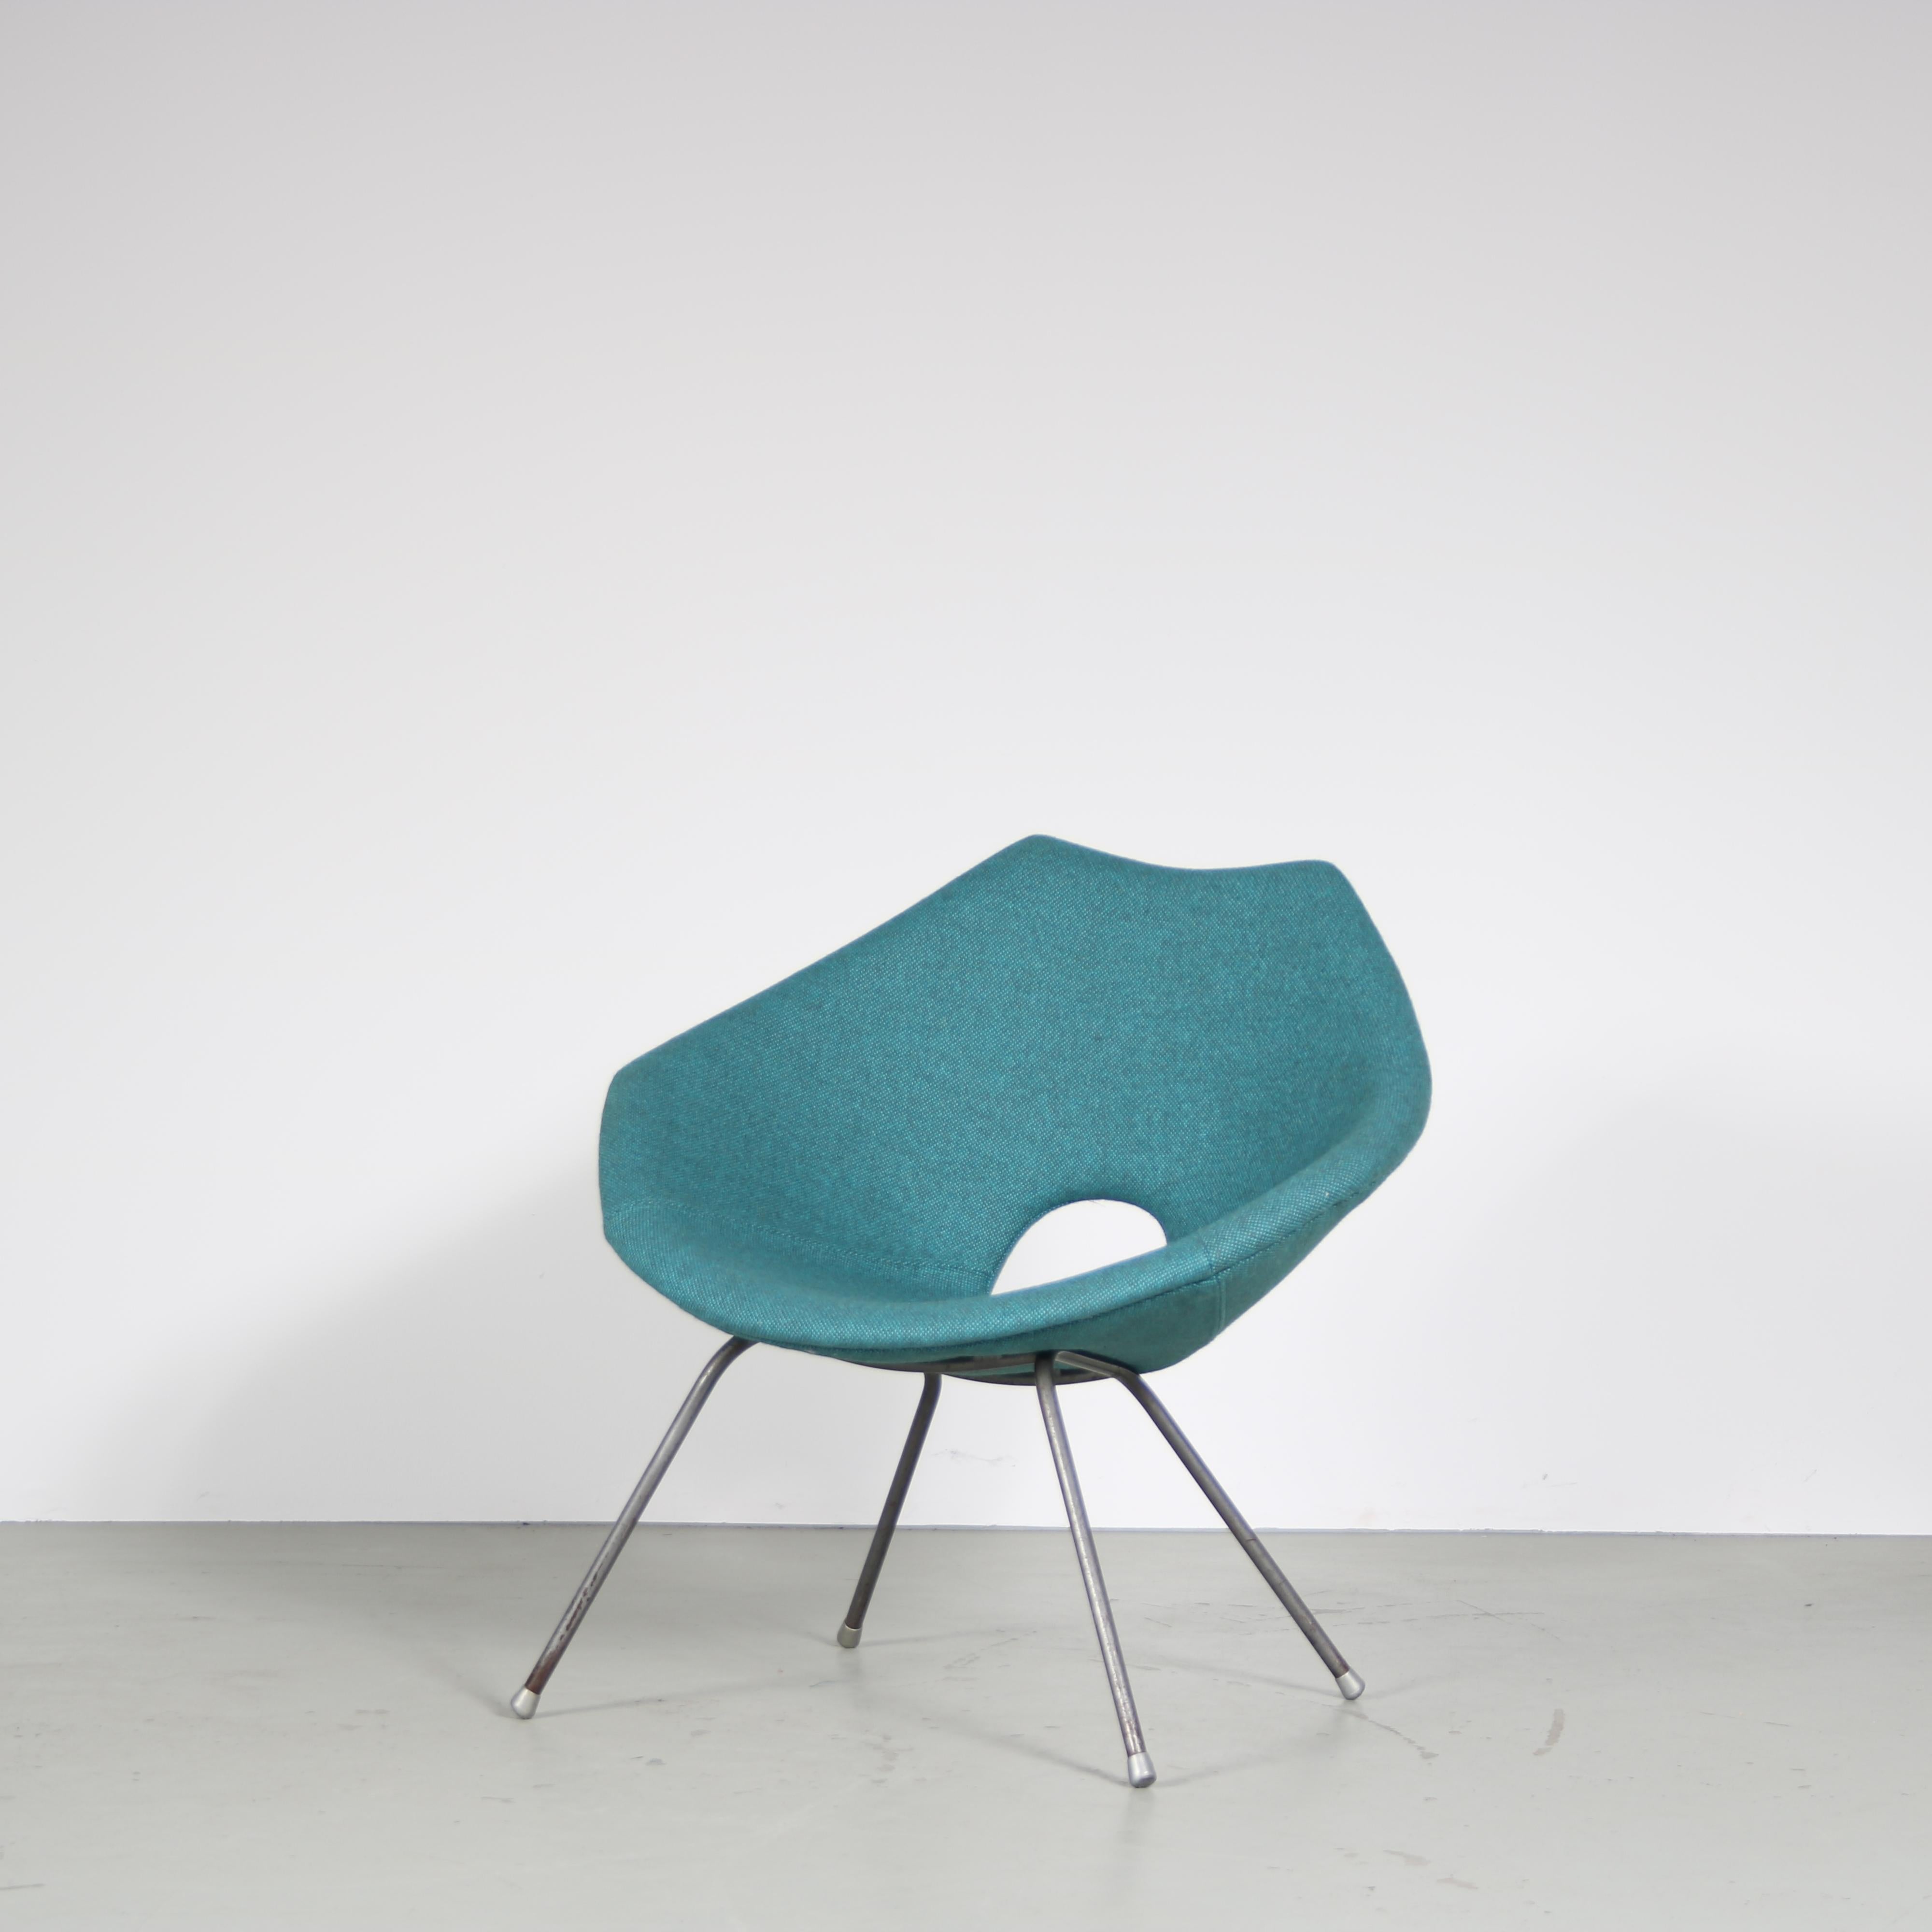 

Une belle chaise longue dessinée par Augusto Bozzi et fabriquée par Saporiti en Italie vers 1950.

La chaise est dotée d'une solide base en métal gris qui assure la stabilité et complète l'esthétique générale. Les lignes épurées et le design